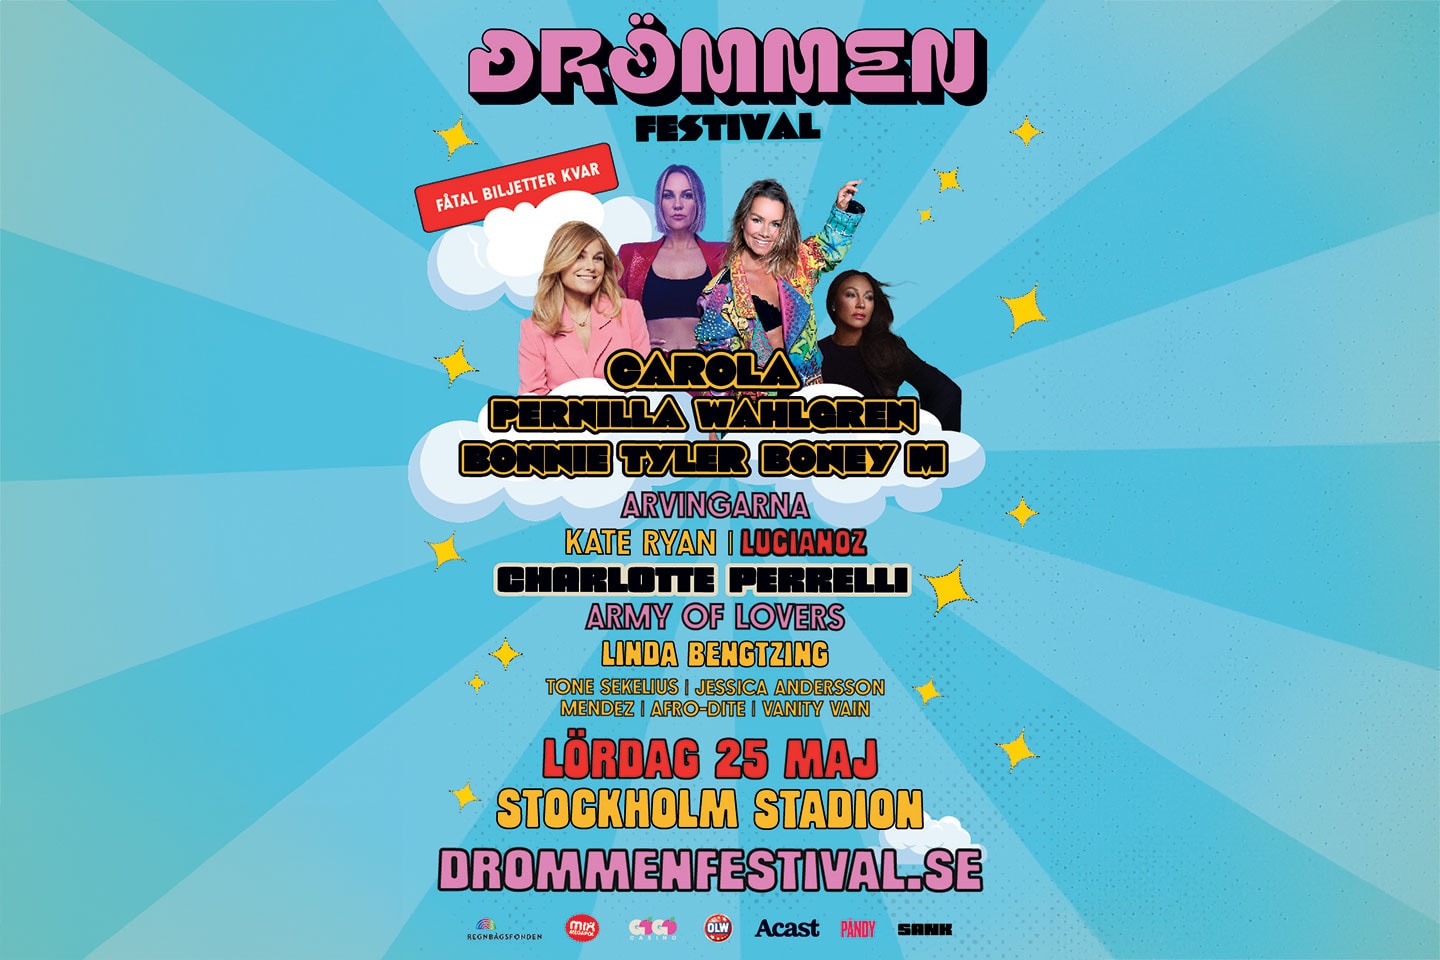 Entrébiljett till Drömmen Festival 25 maj på Stockholm Stadion (1 av 2)